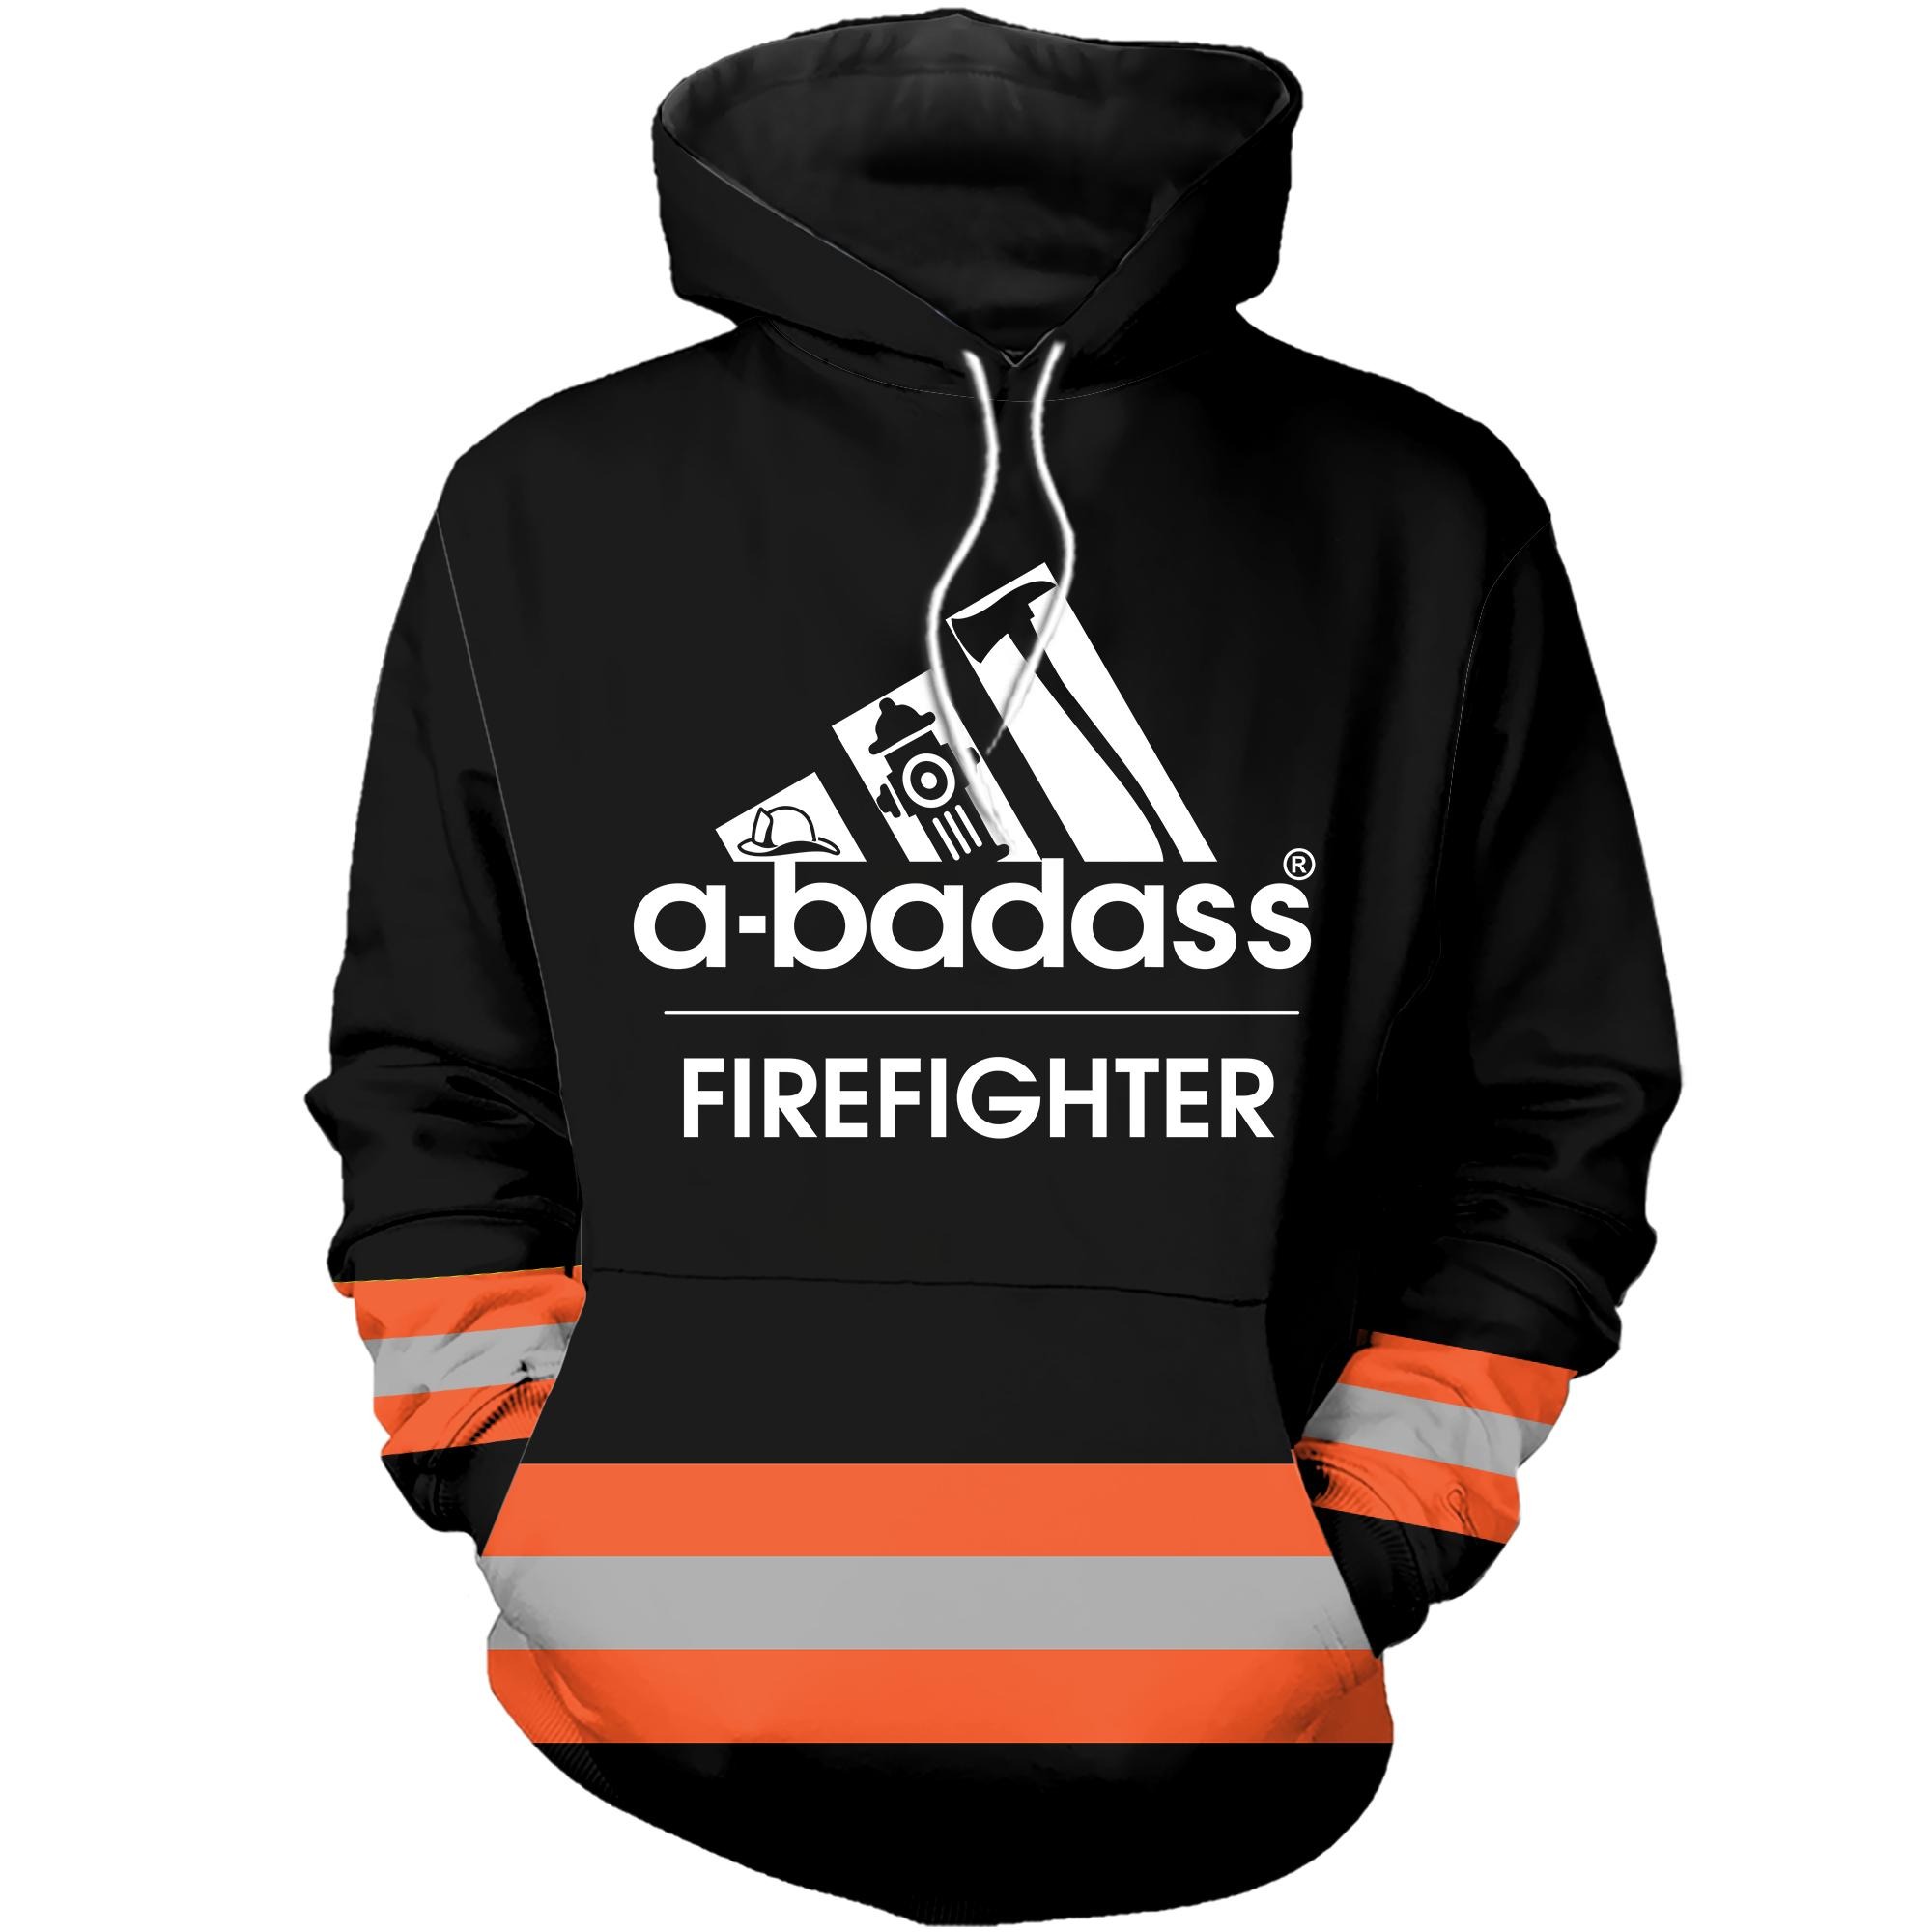 Under Armour firefighter abadass orange line hoodie